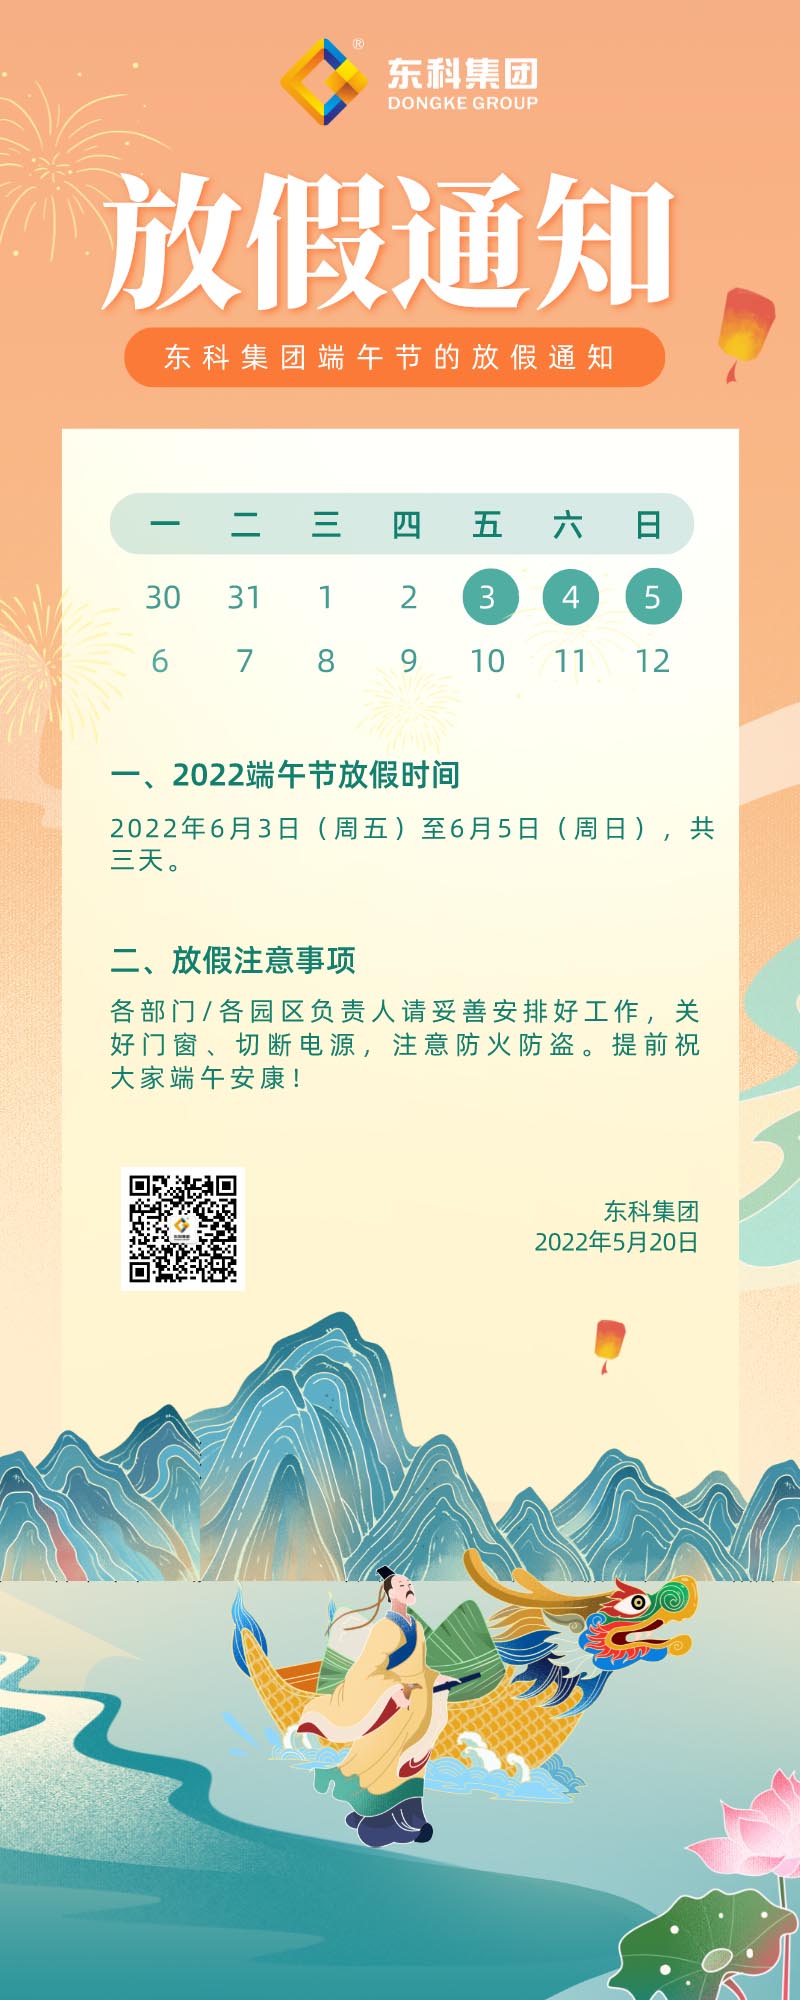 【东科集团】2022年端午节放假通知